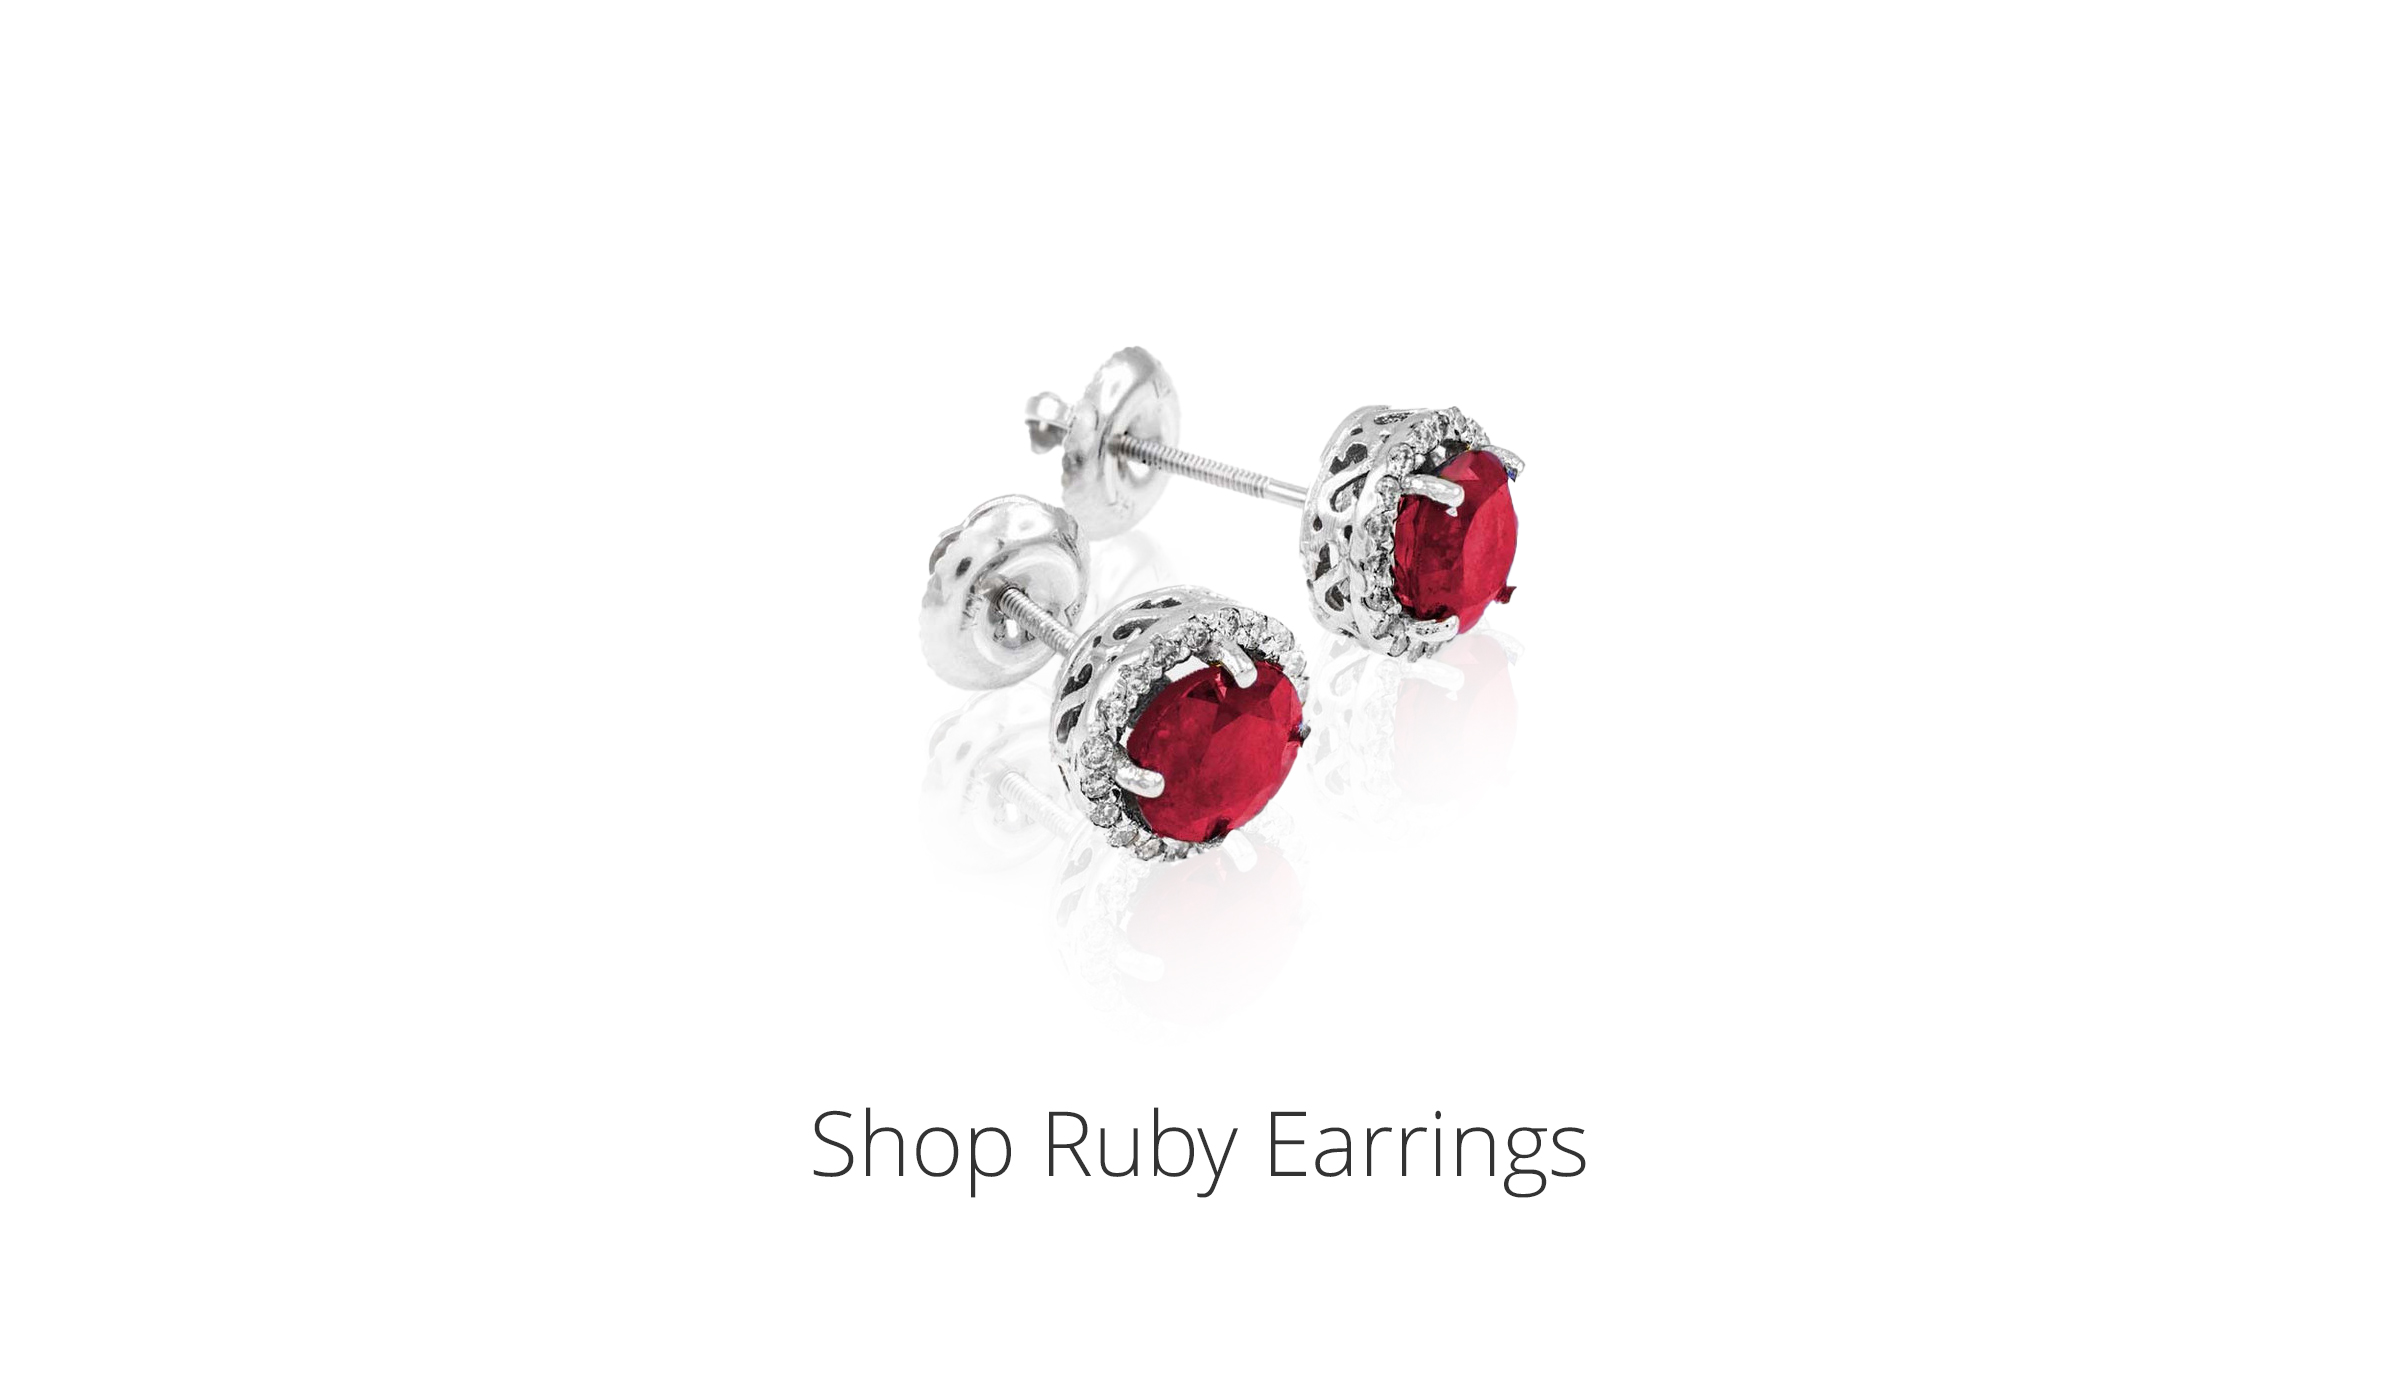 Shop Ruby Earrings